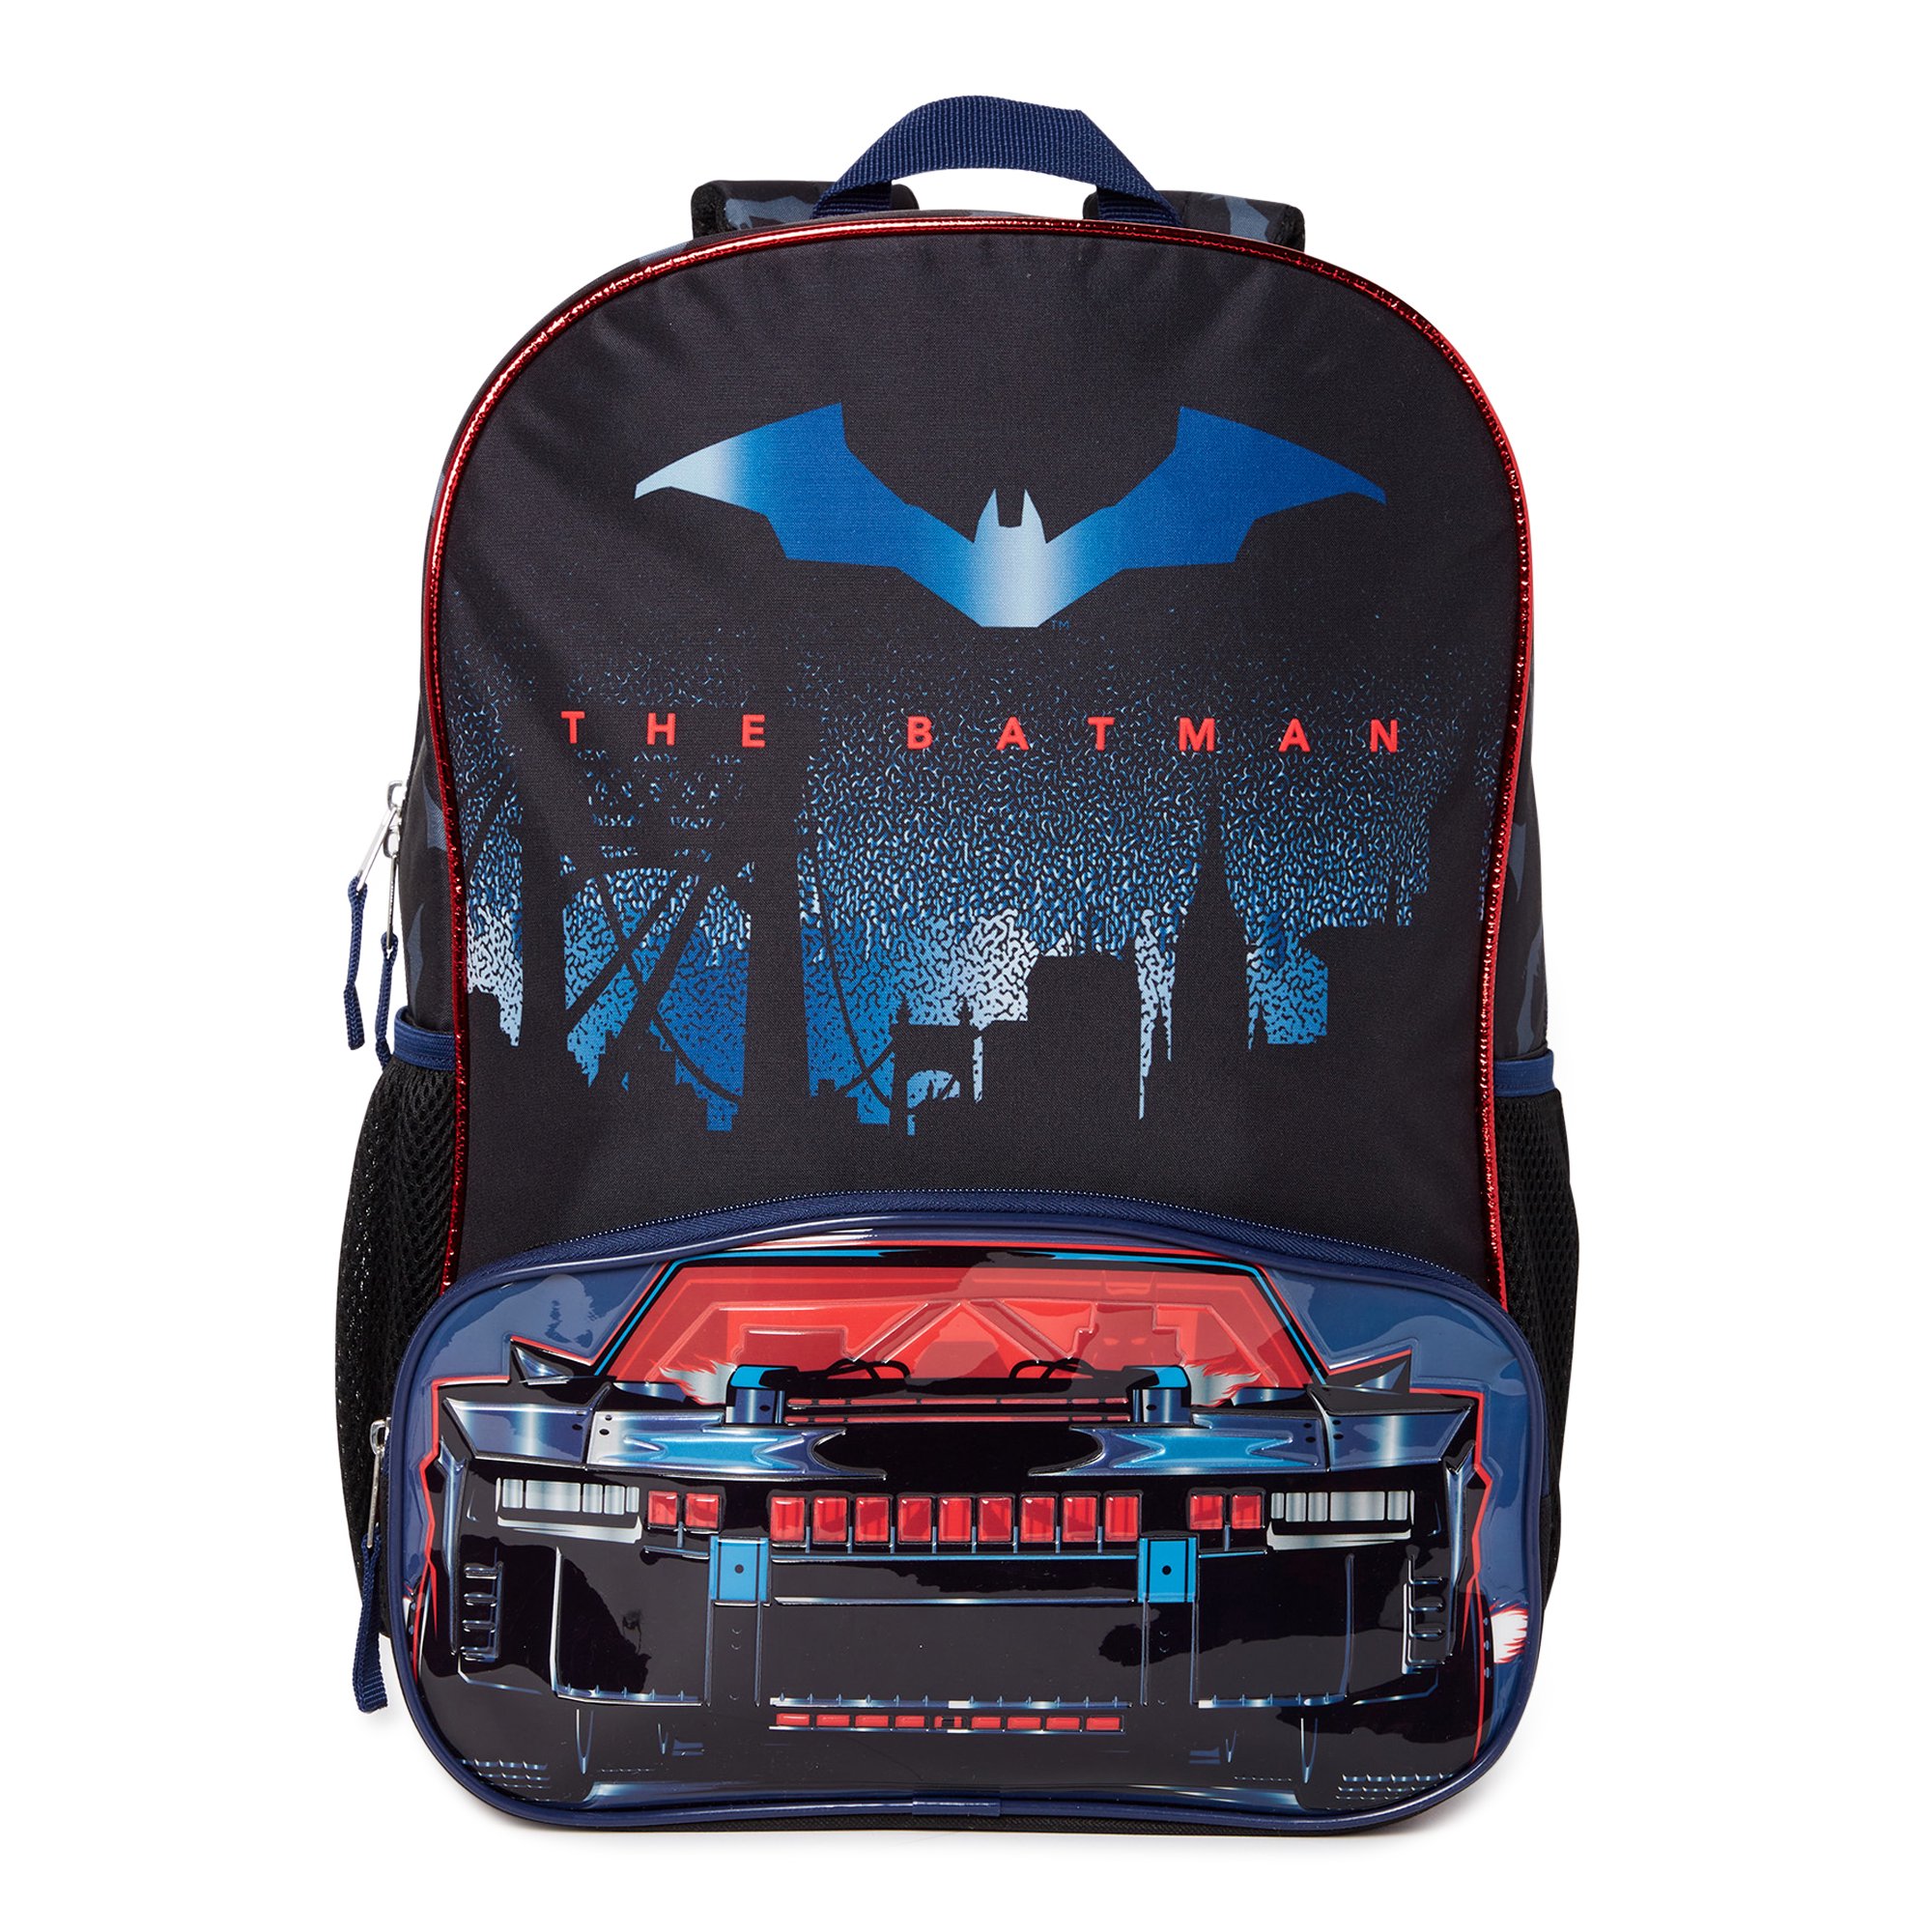 DC Comics Warner Bros. DC Comics The Batman Bat Mobile 17" Backpack, Black Batmobile Bag